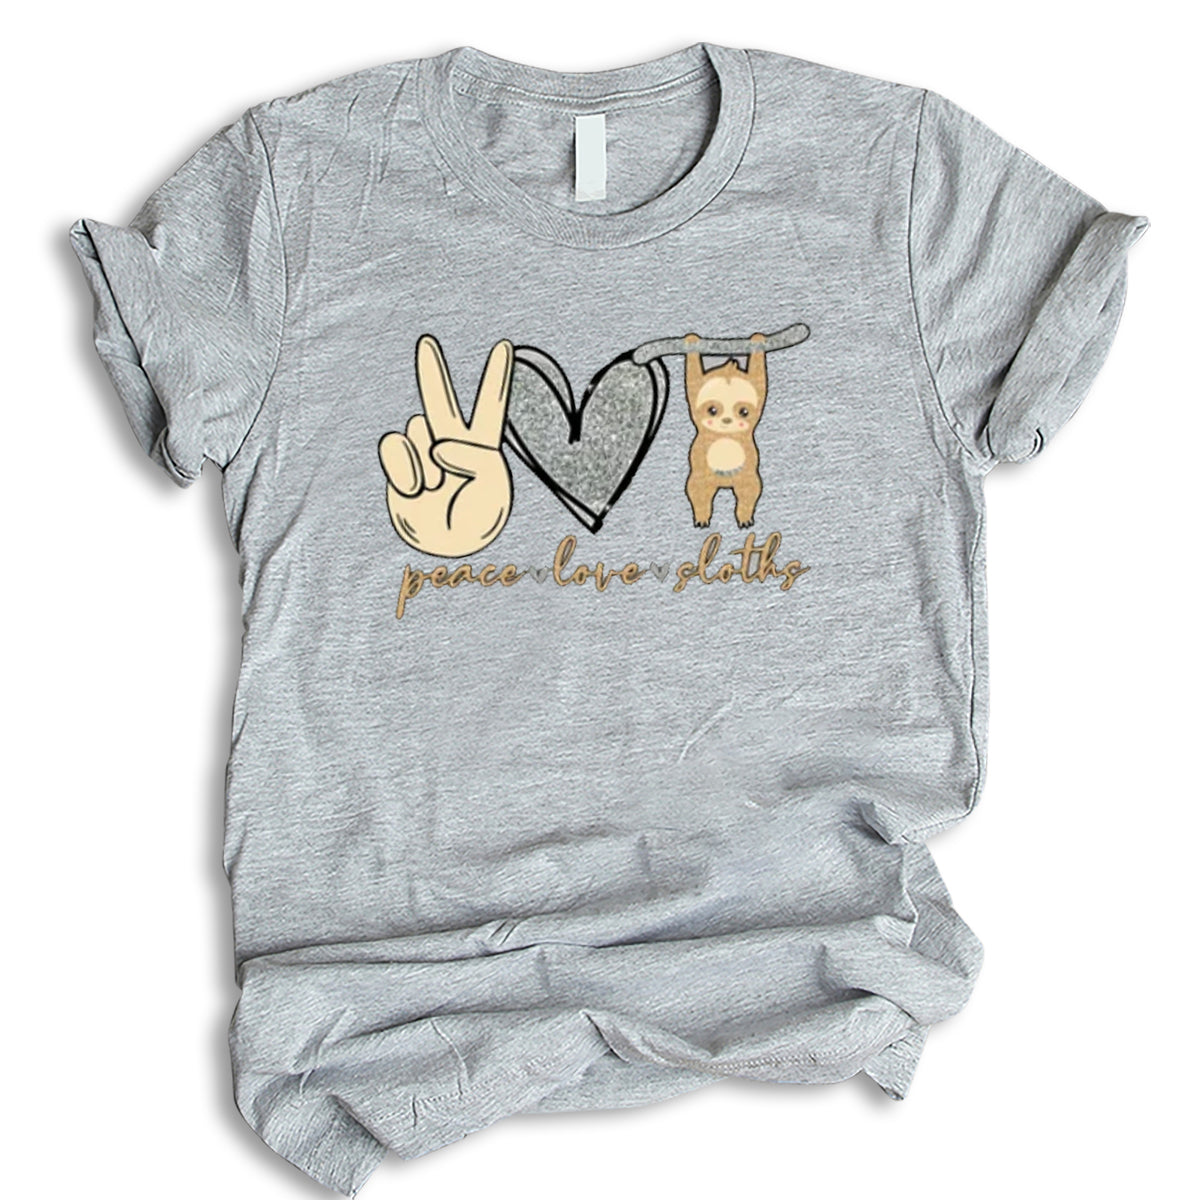 Peace Love Sloths Shirt, Sloths Shirt, Cute Sloths Shirt, Funny Sloths Shirt, Farm Sloths Shirt, T-Shirt, Tee